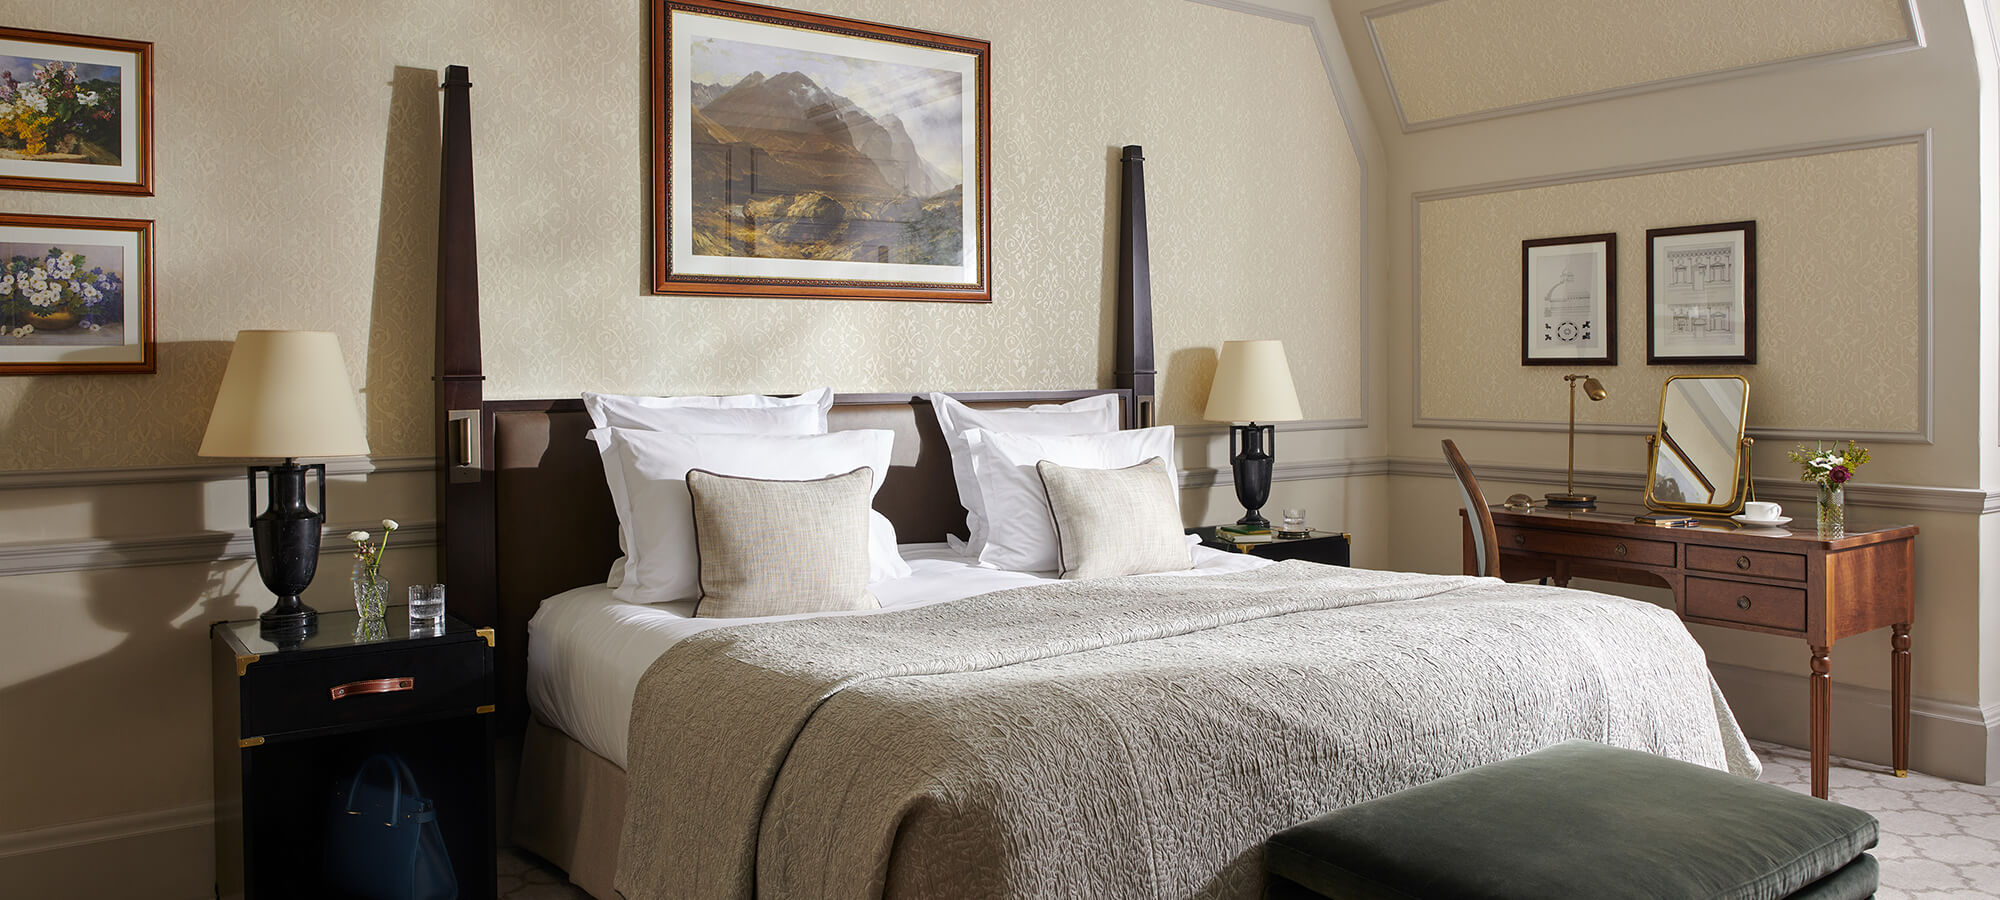 Kingsize-Bett in einem schönen Country-Zimmer mit Gemälden an den Wänden und einem Schreibtisch an der Seite